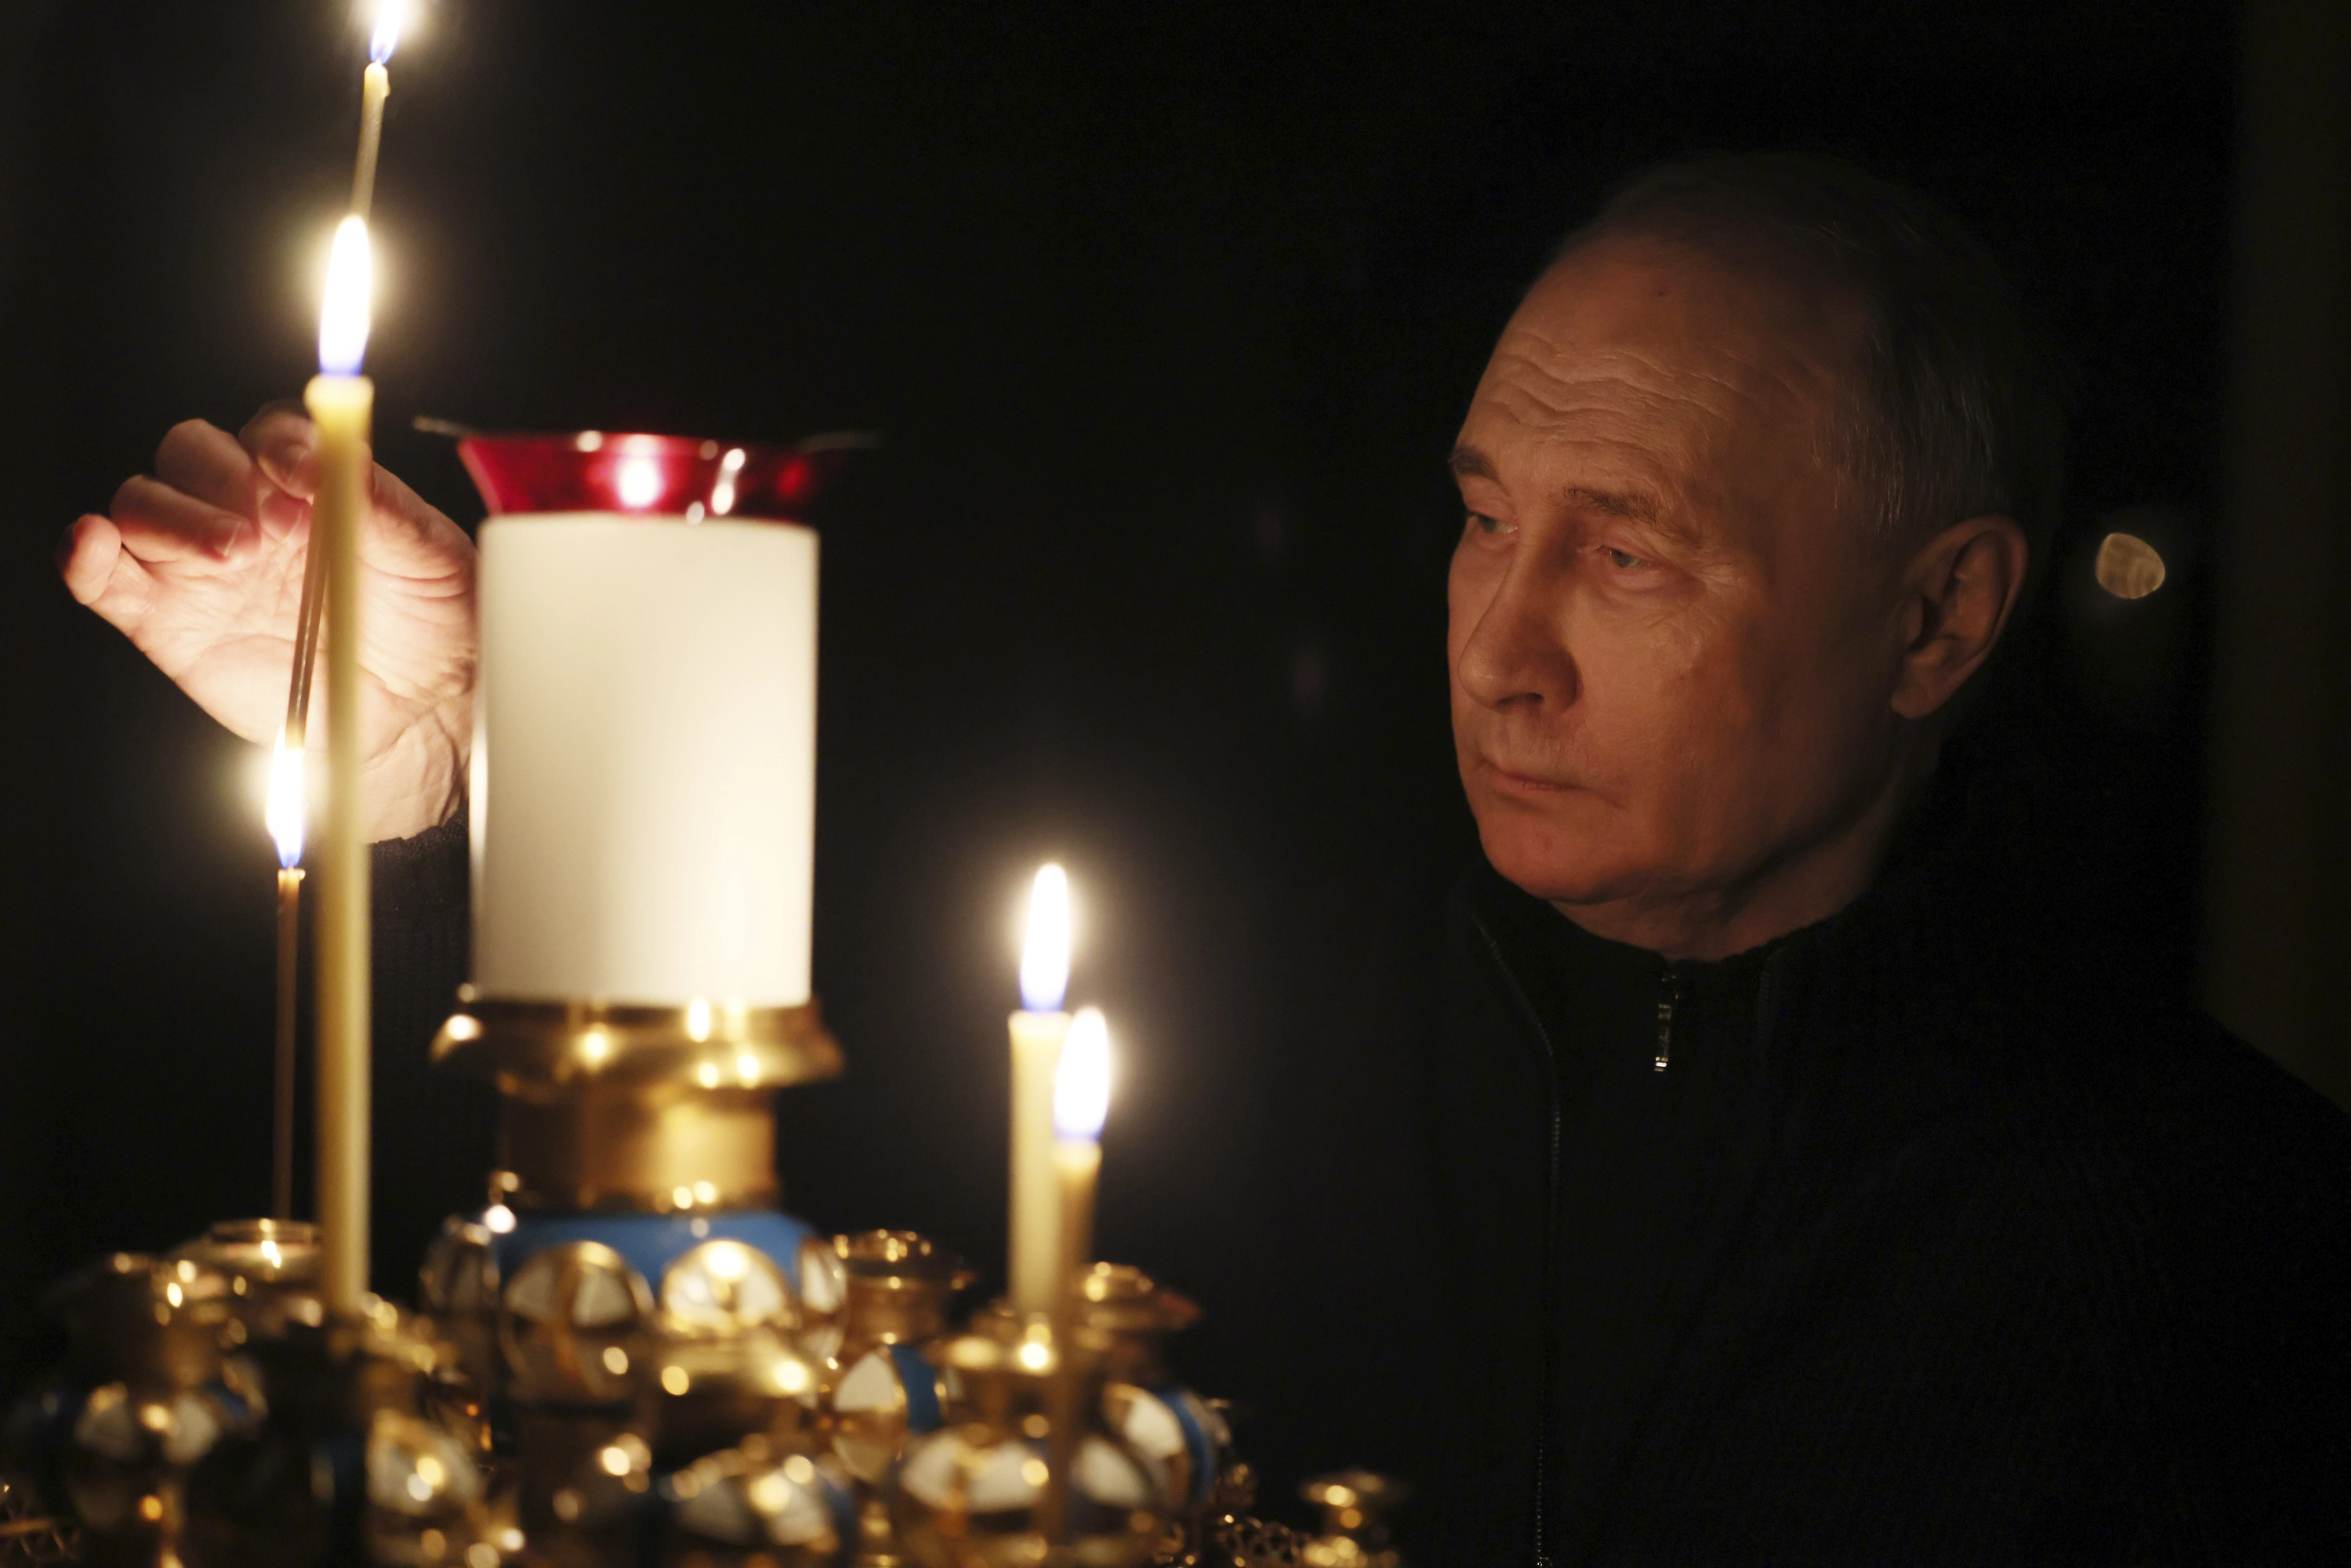 Moscu llora a los 137 muertos mientras el Kremlin evita nombrar al Estado Islamico como autor : Internacional de